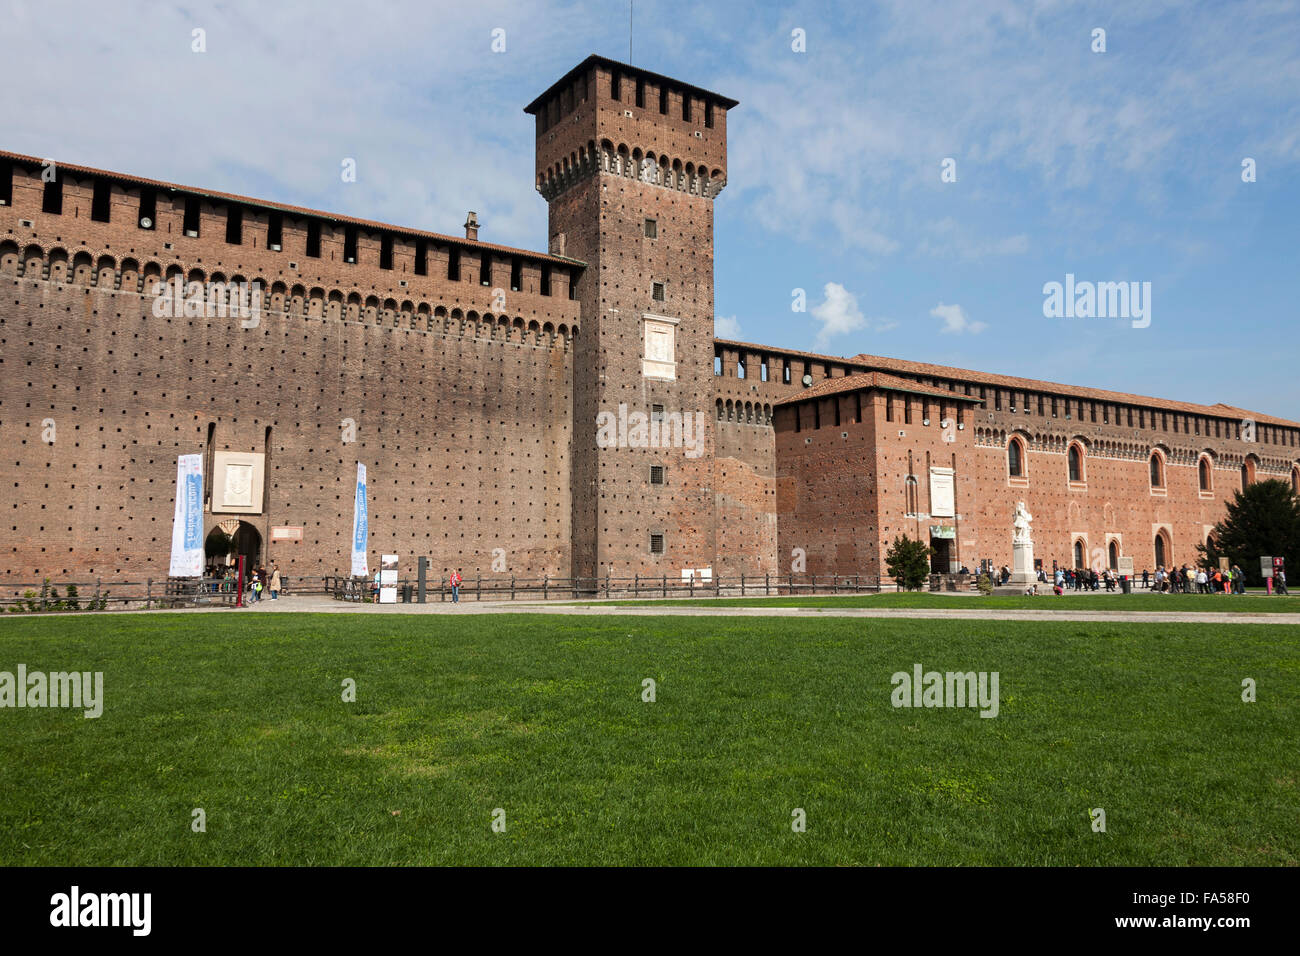 Facade of a castle, Castello Sforzesco, Milan, Lombardy, Italy Stock Photo